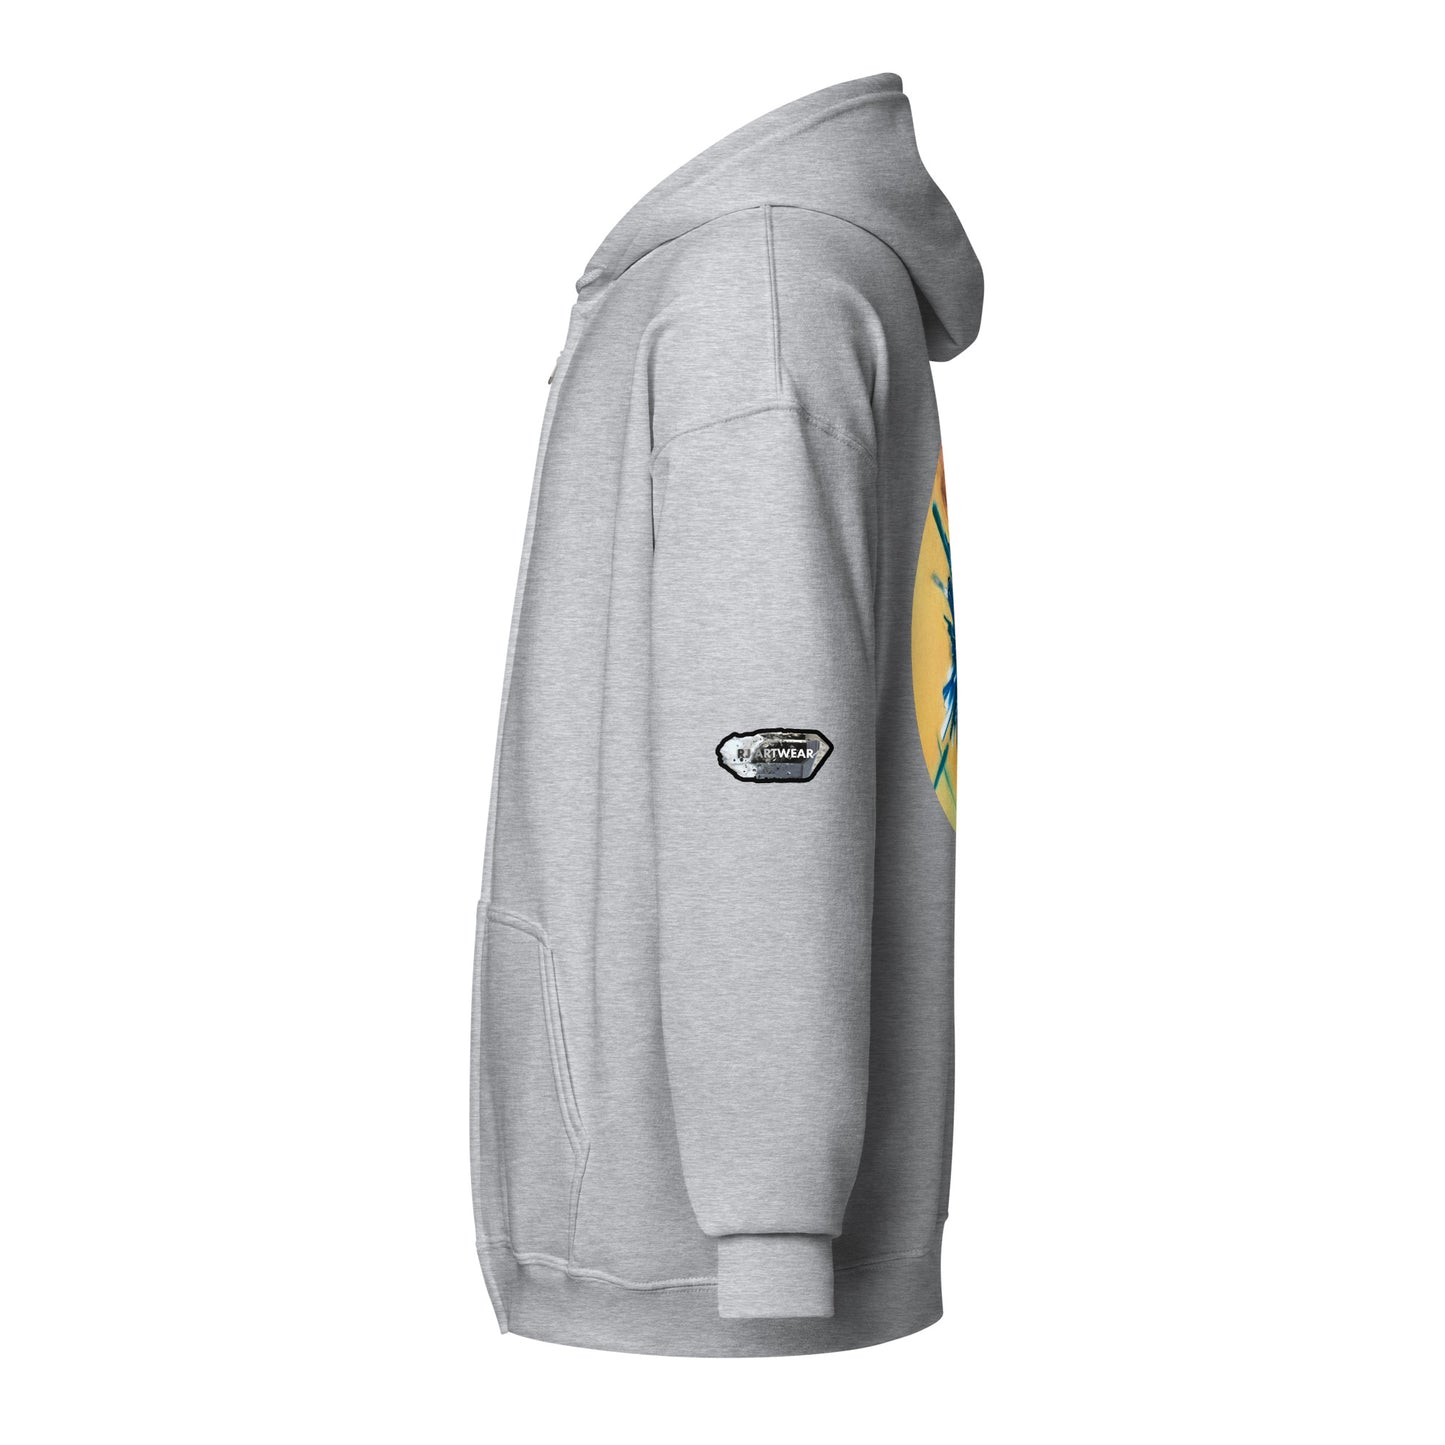 Chrysocolla Drawing - Unisex heavy blend zip hoodie